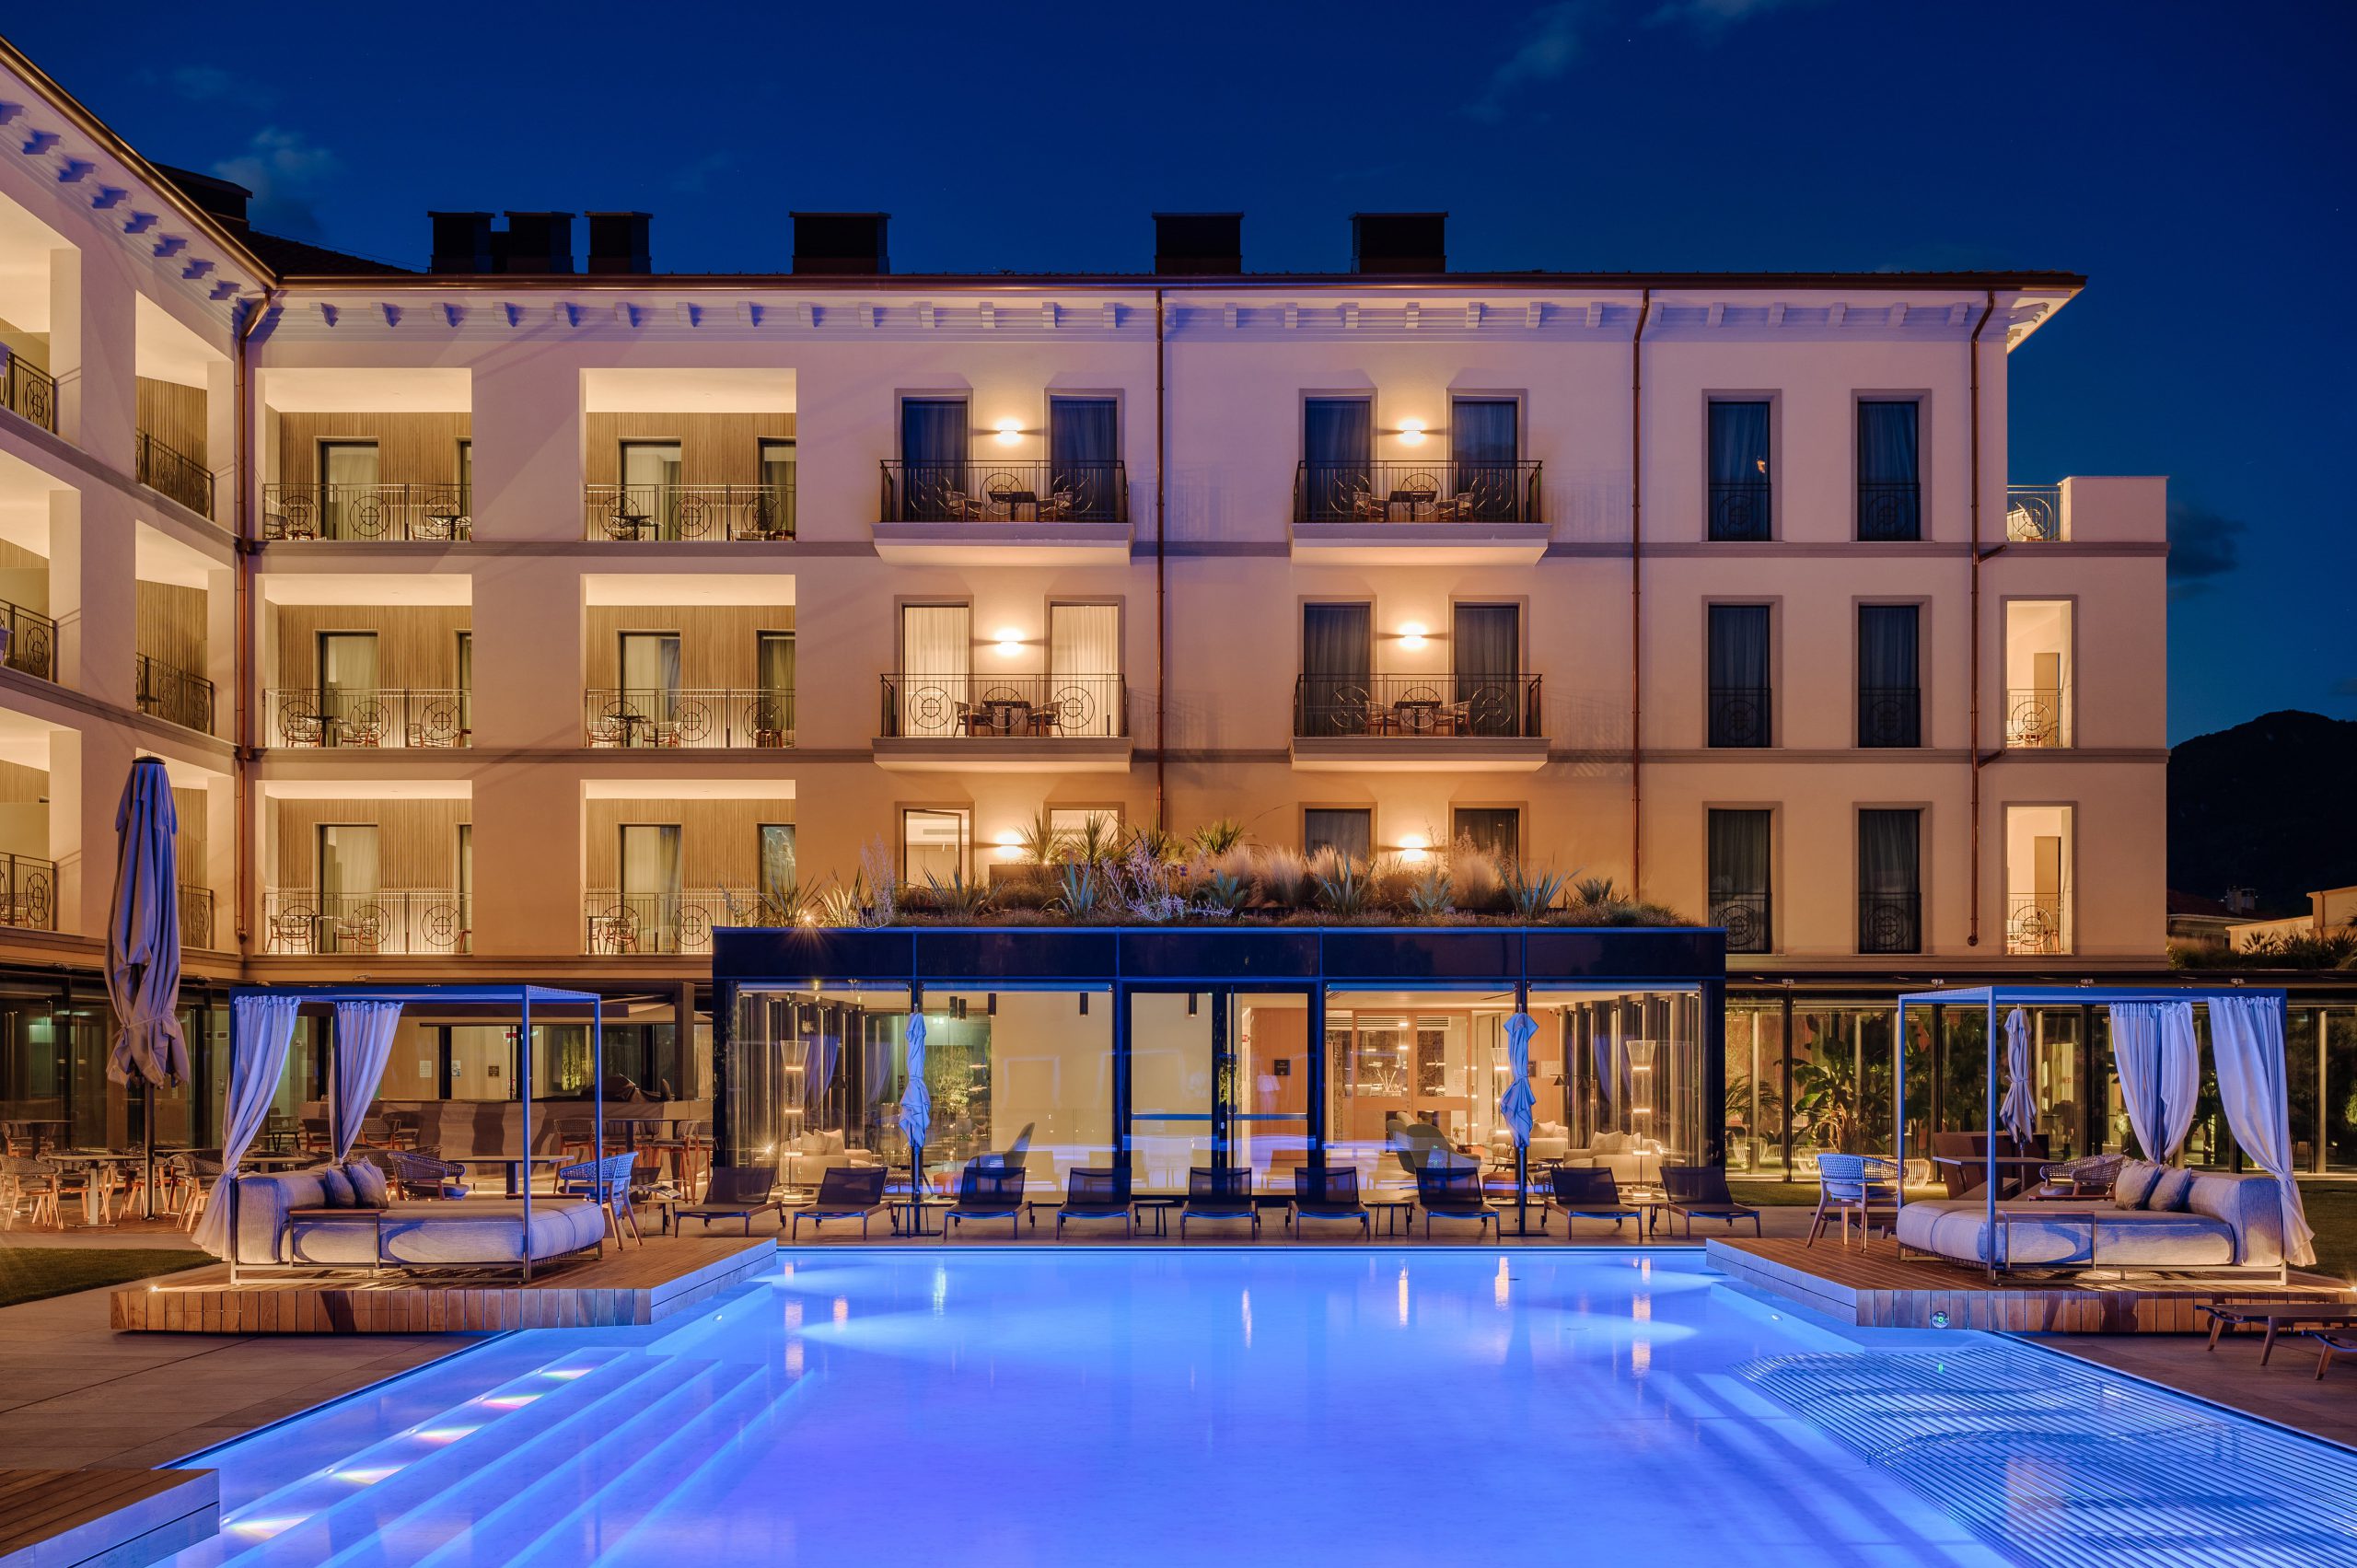 Grand Hotel Victoria di Menaggio, intervista all’Architetto Franco Pè